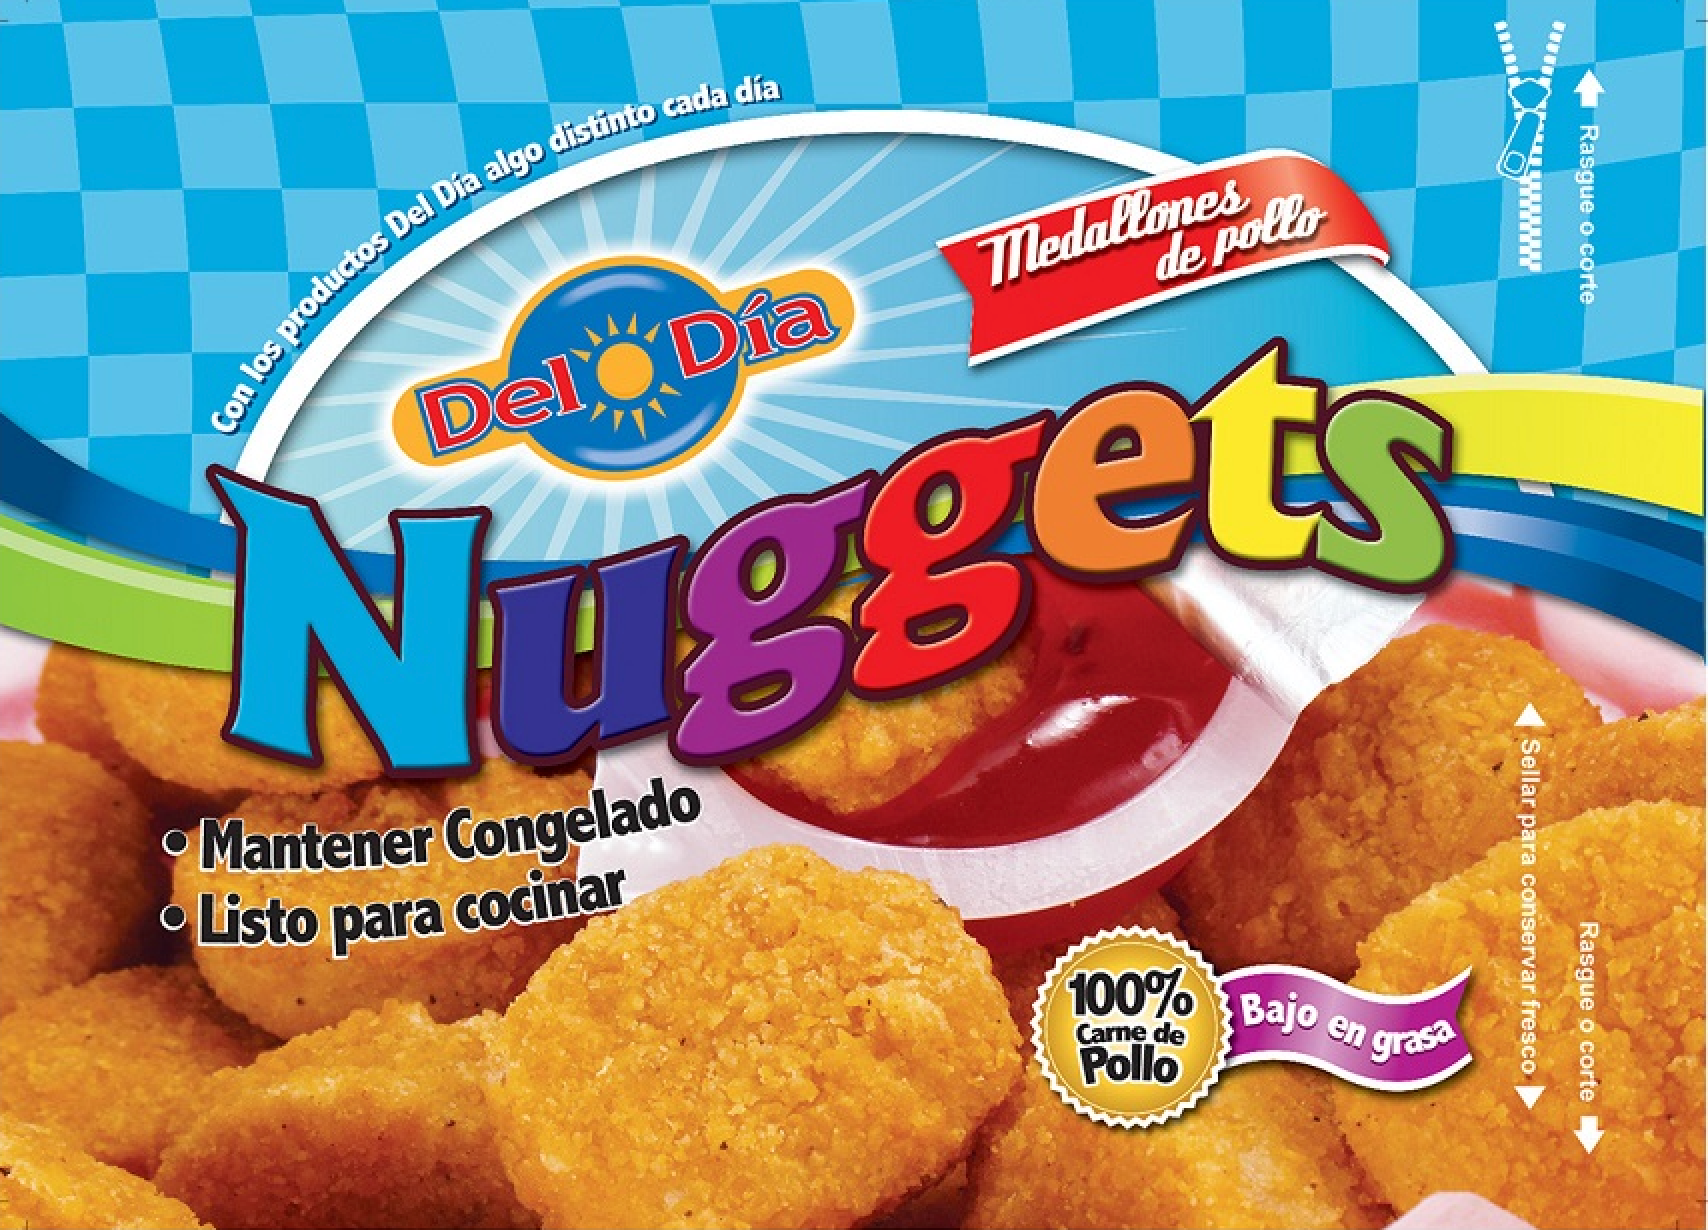 Nuggets de Pollo de Productos del Día – Productos Del Día